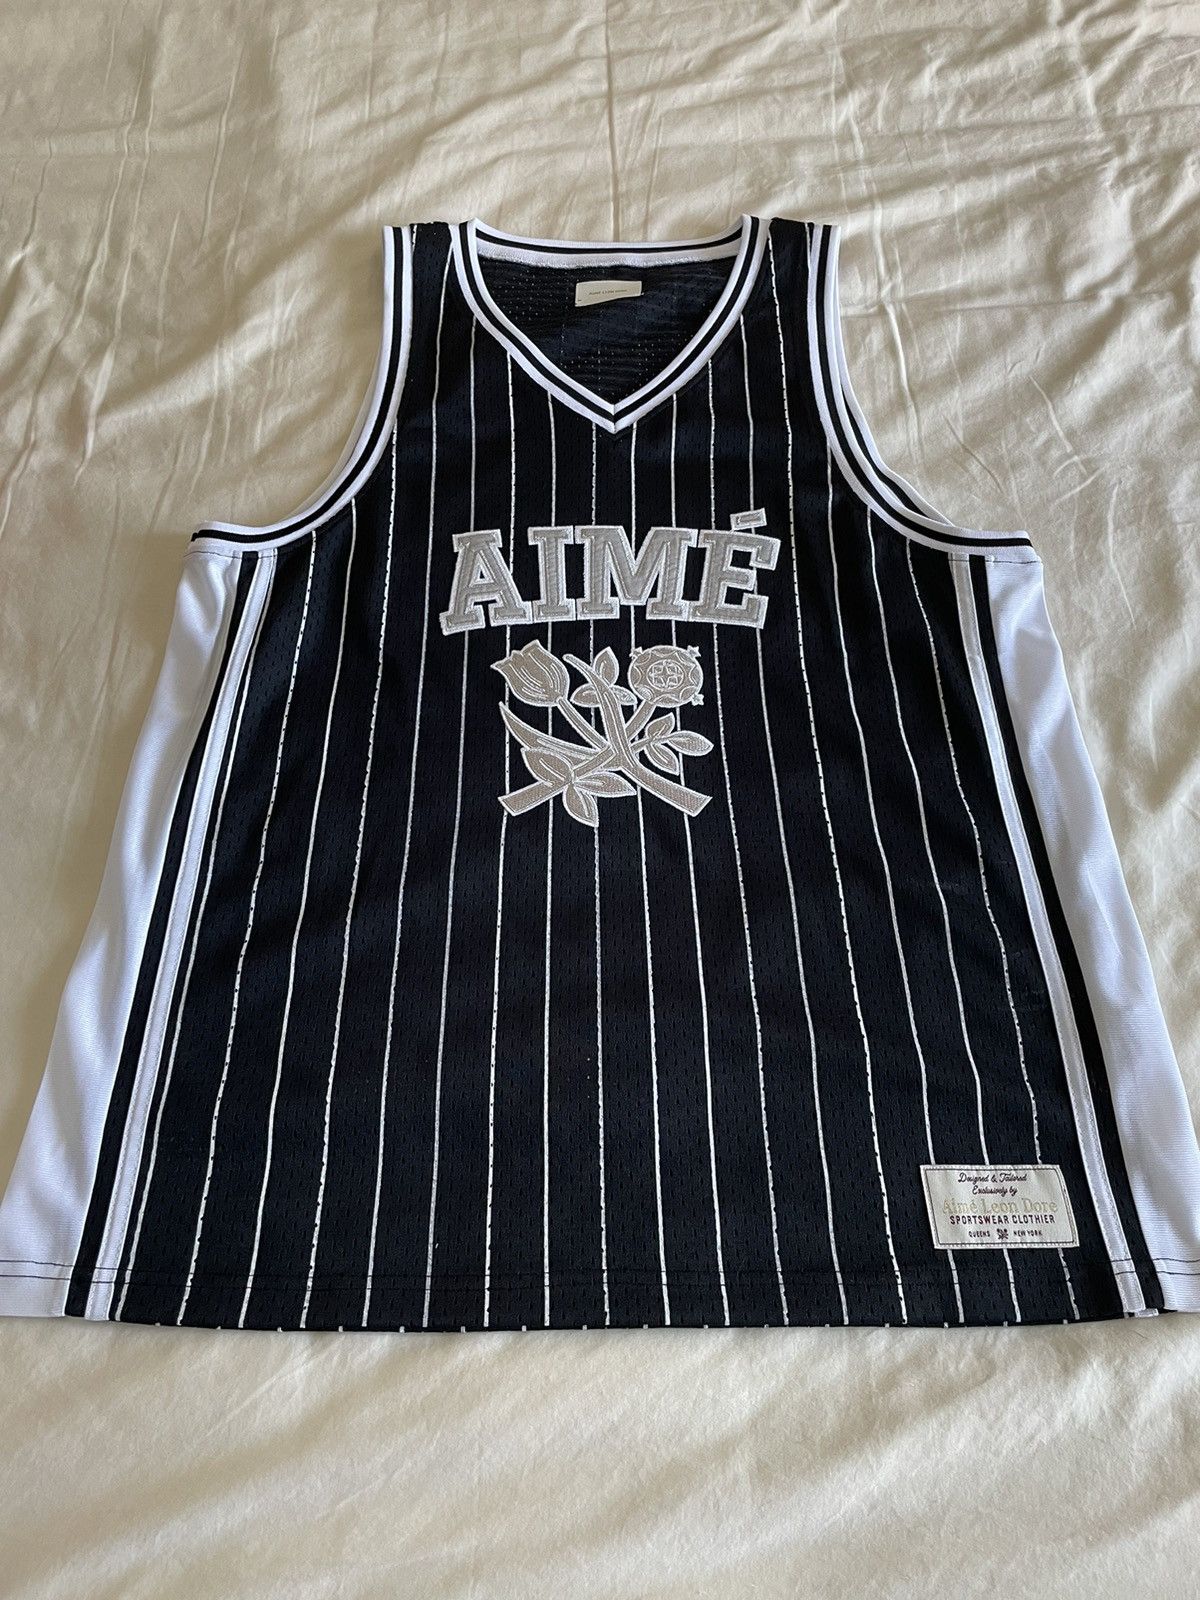 Aime Leon Dore Aime Leon dore classic striped basketball jersey ss22 |  Grailed